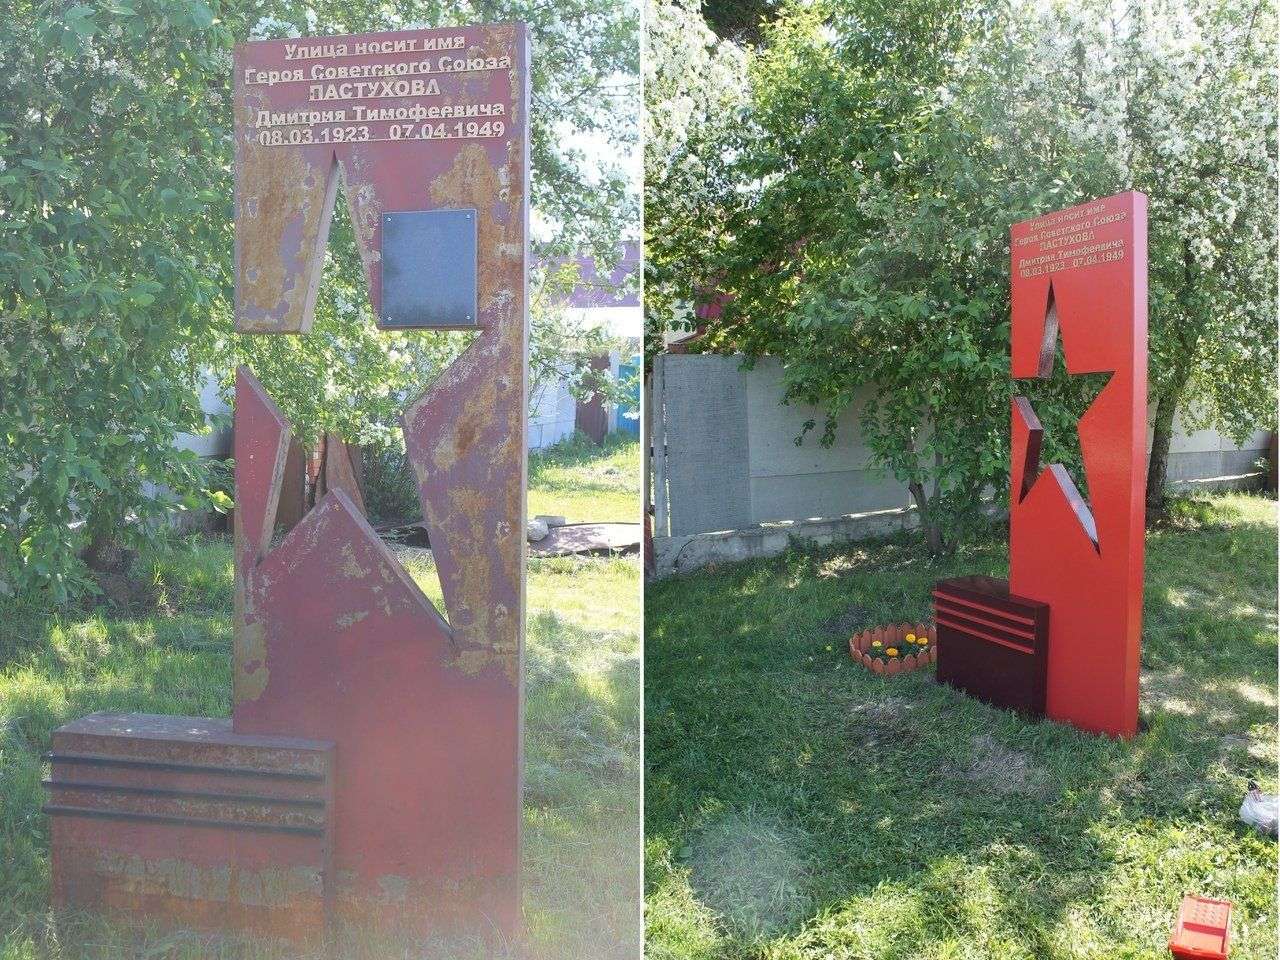 Волонтёры «100 друзей» отреставрировали памятник герою Советского Союза Дмитрию Пастухову